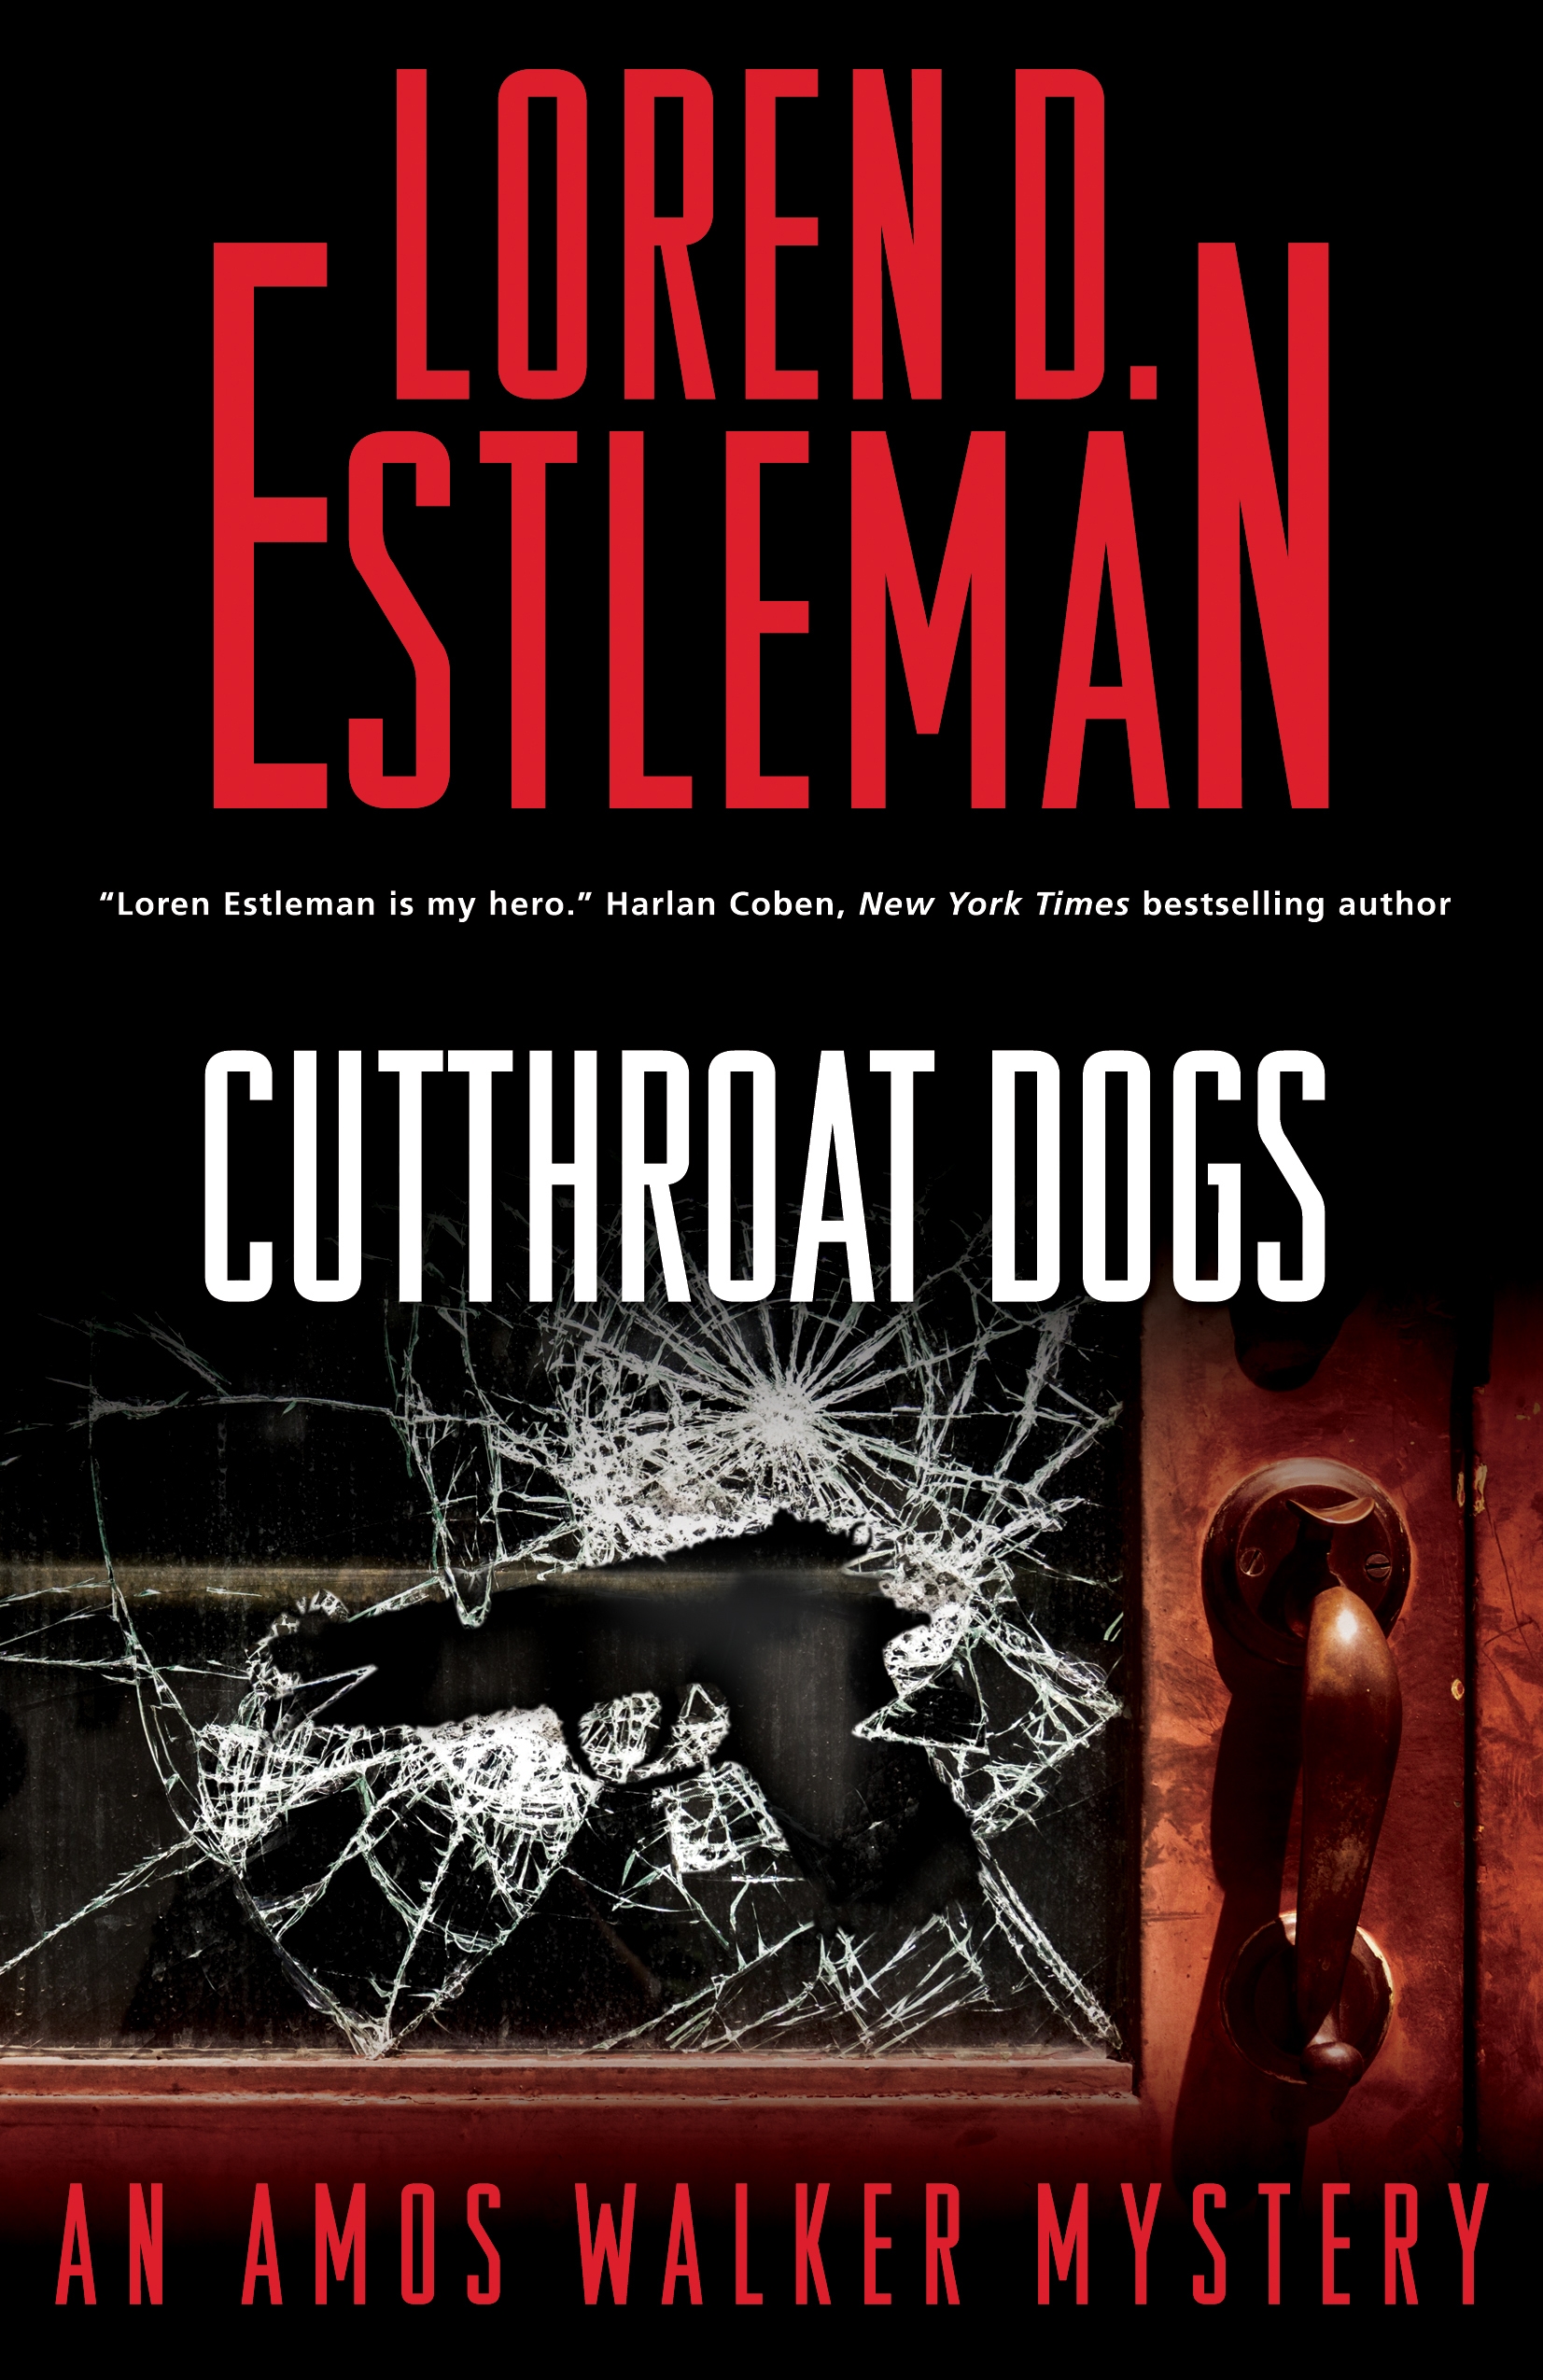 Cutthroat Dogs : An Amos Walker Mystery by Loren D. Estleman